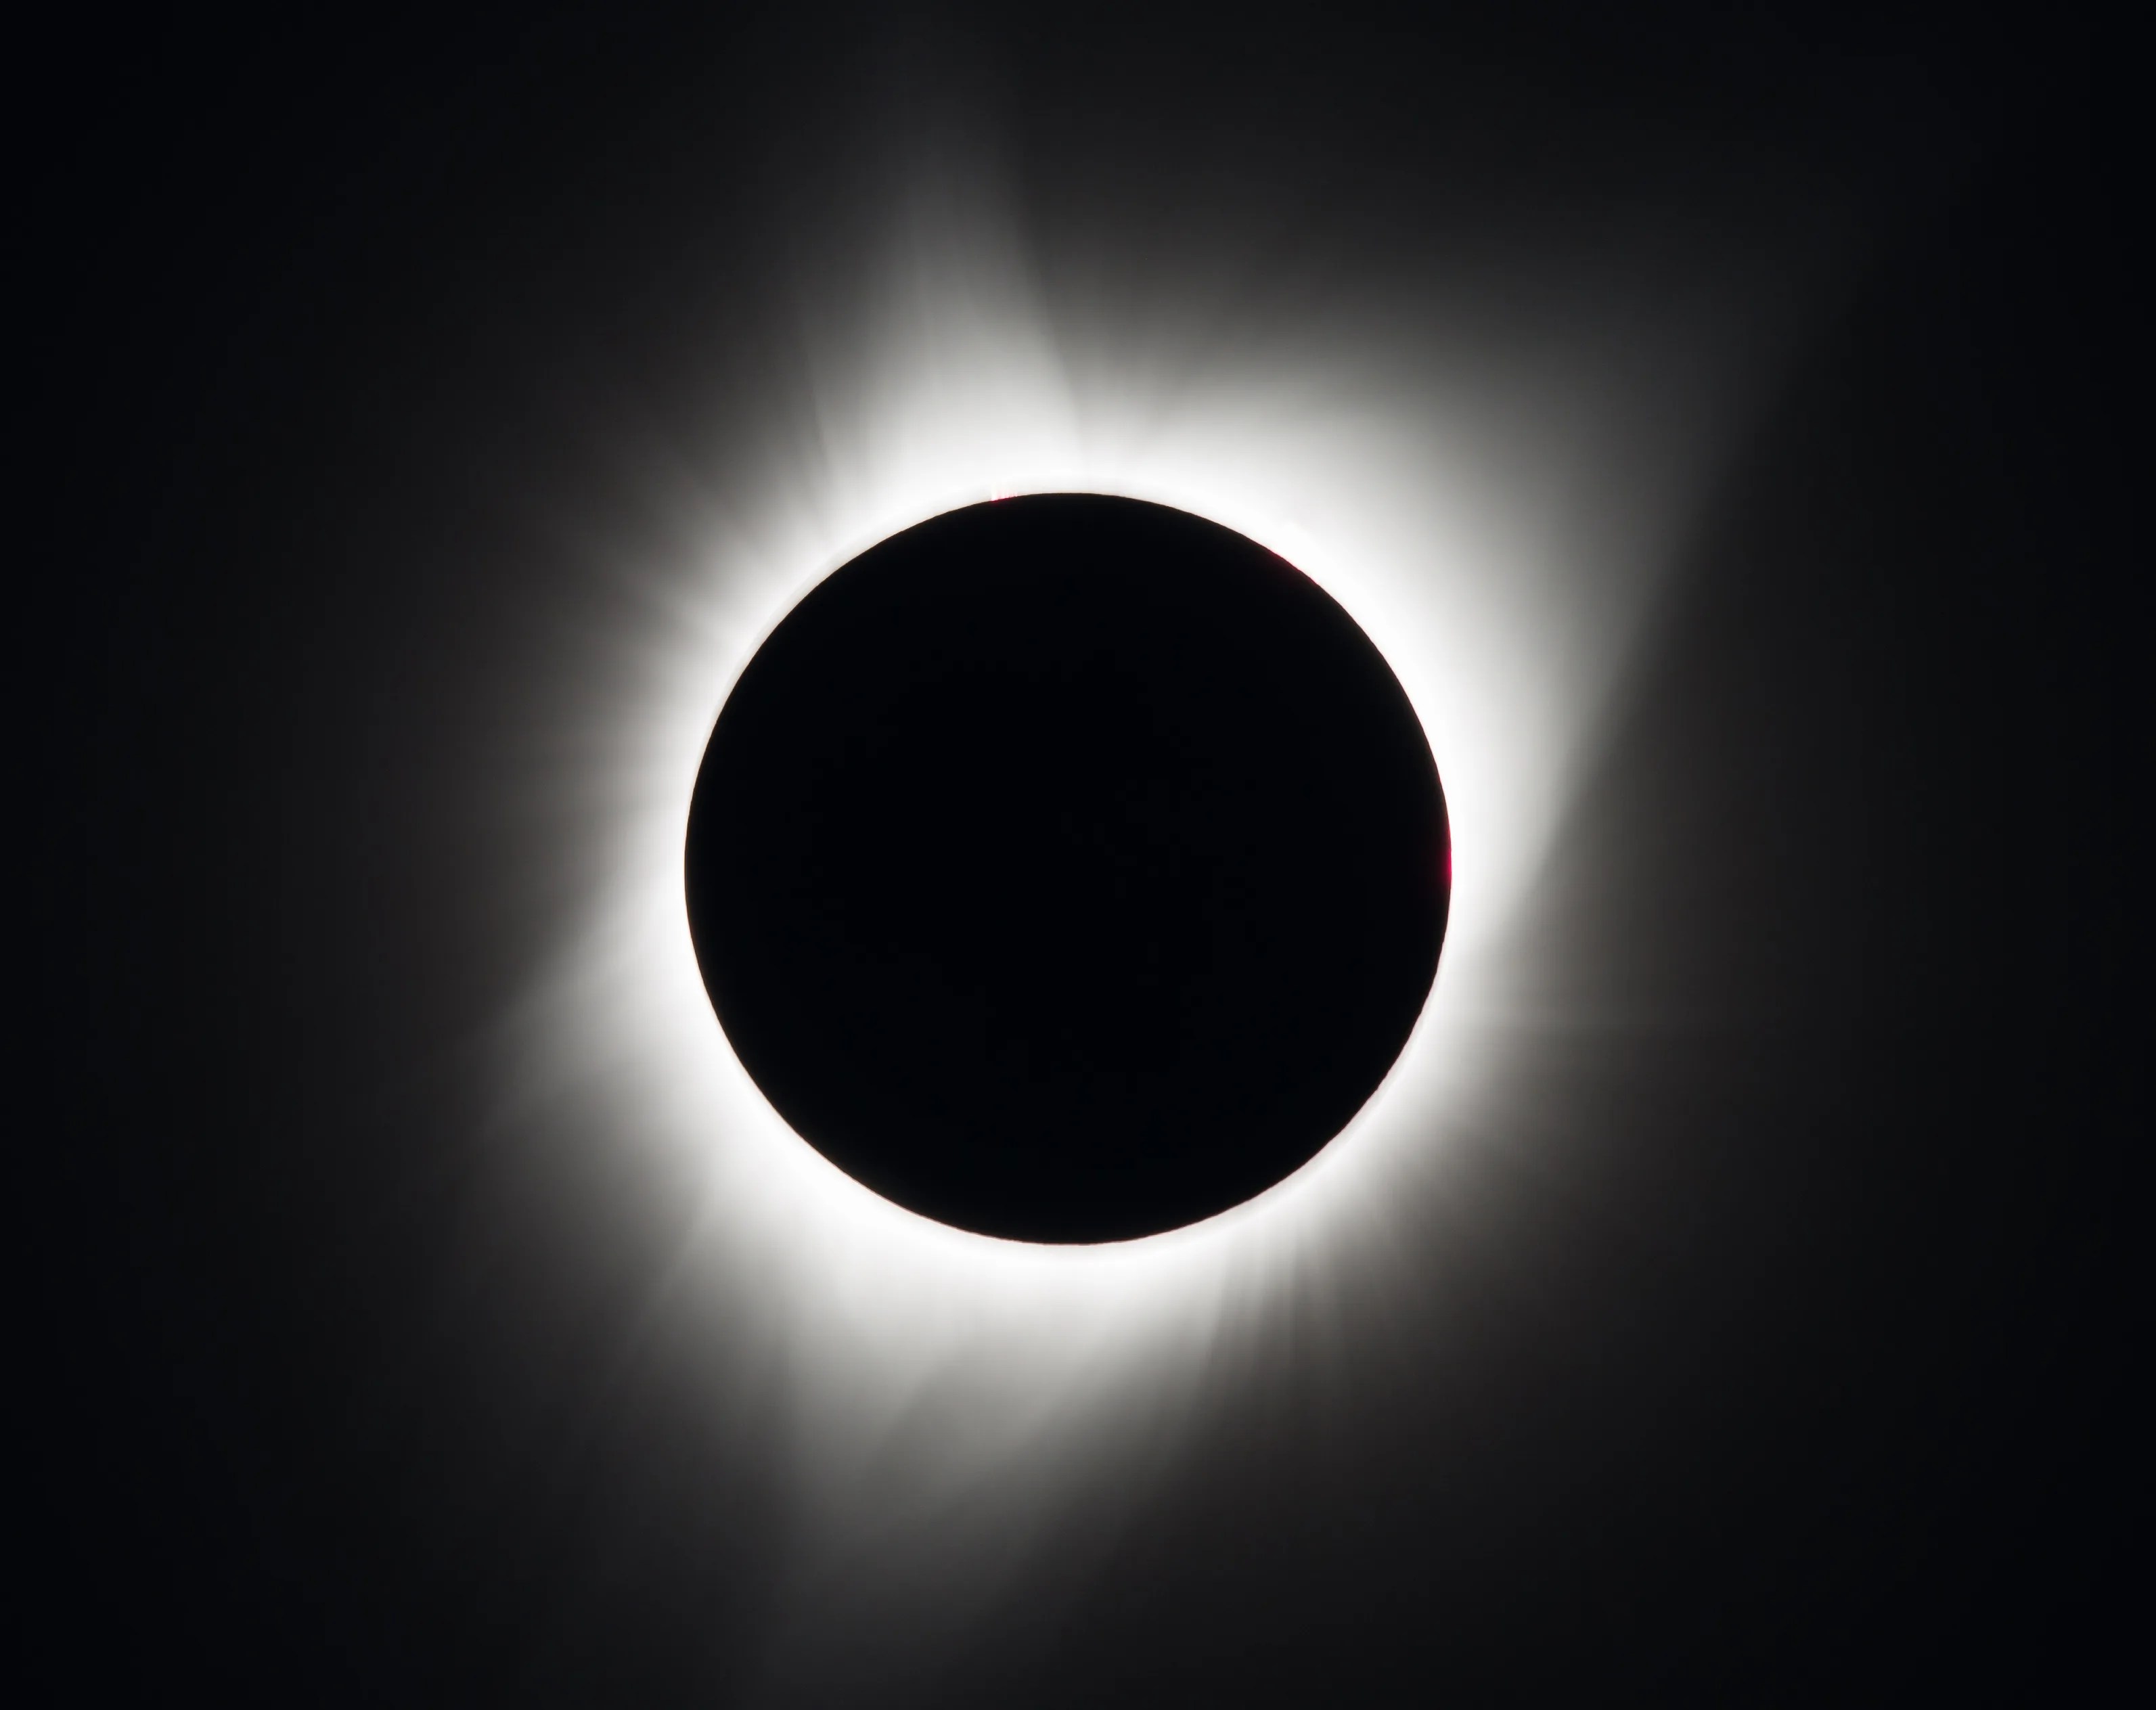 太阳微弱的白色日冕从月亮黑色的圆形轮廓后面向外窥视